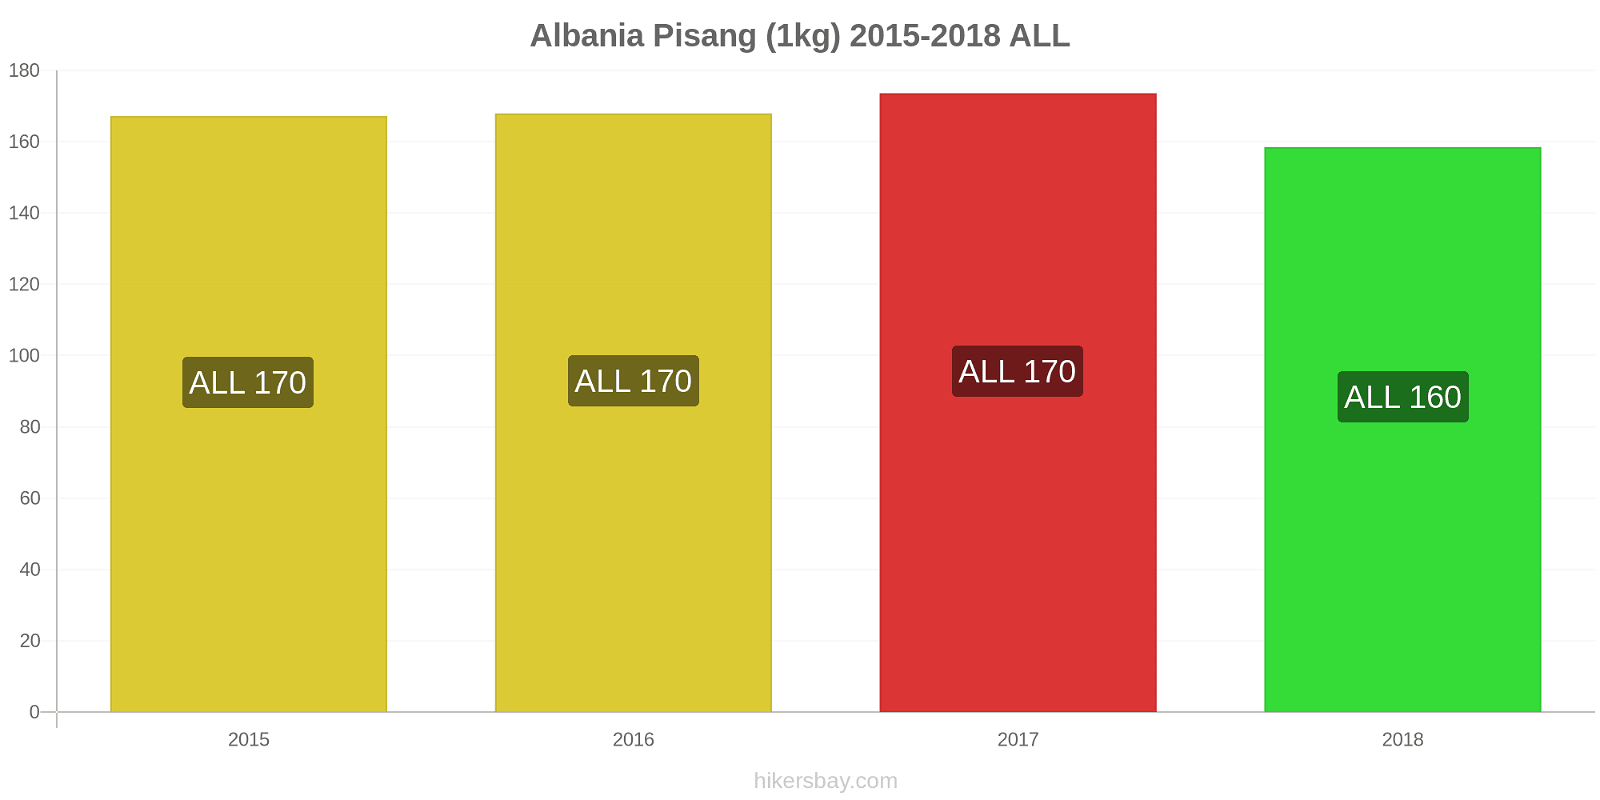 Albania perubahan harga Pisang (1kg) hikersbay.com